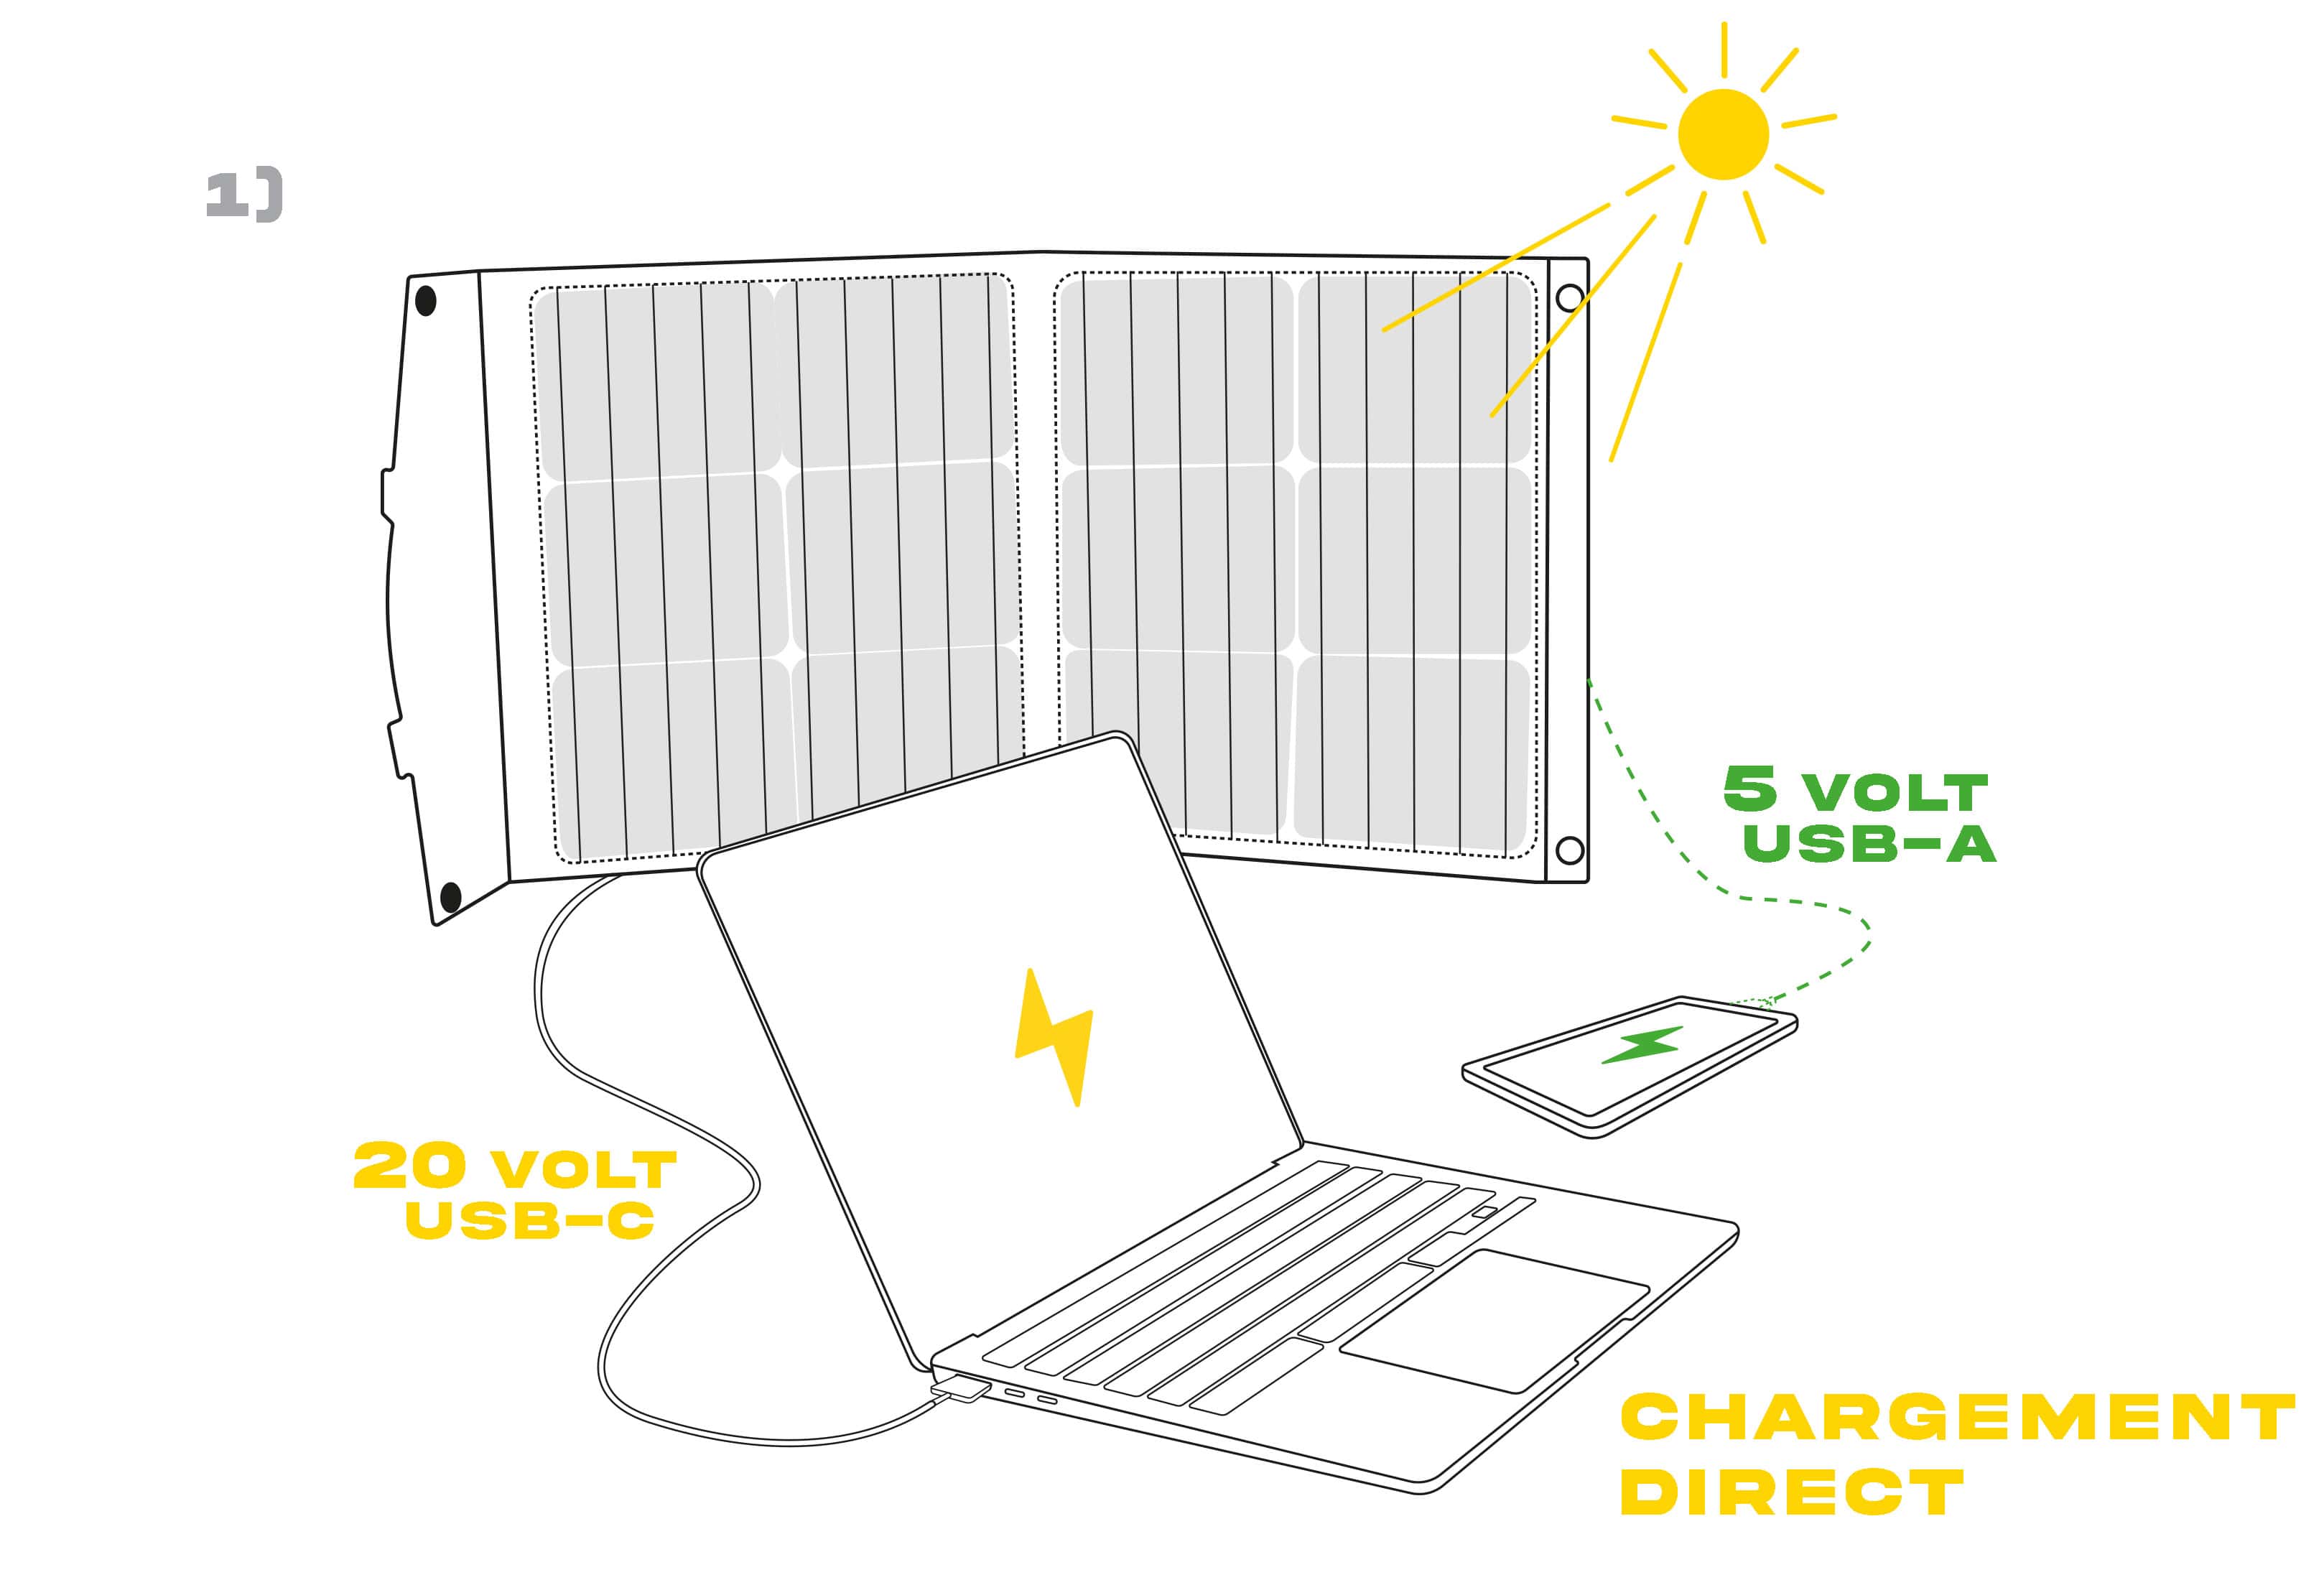 Panneau solaire sous le soleil chargeant un ordinateur ( 20 volt USB-C) et un smartphone ( 5 volt USB-A)